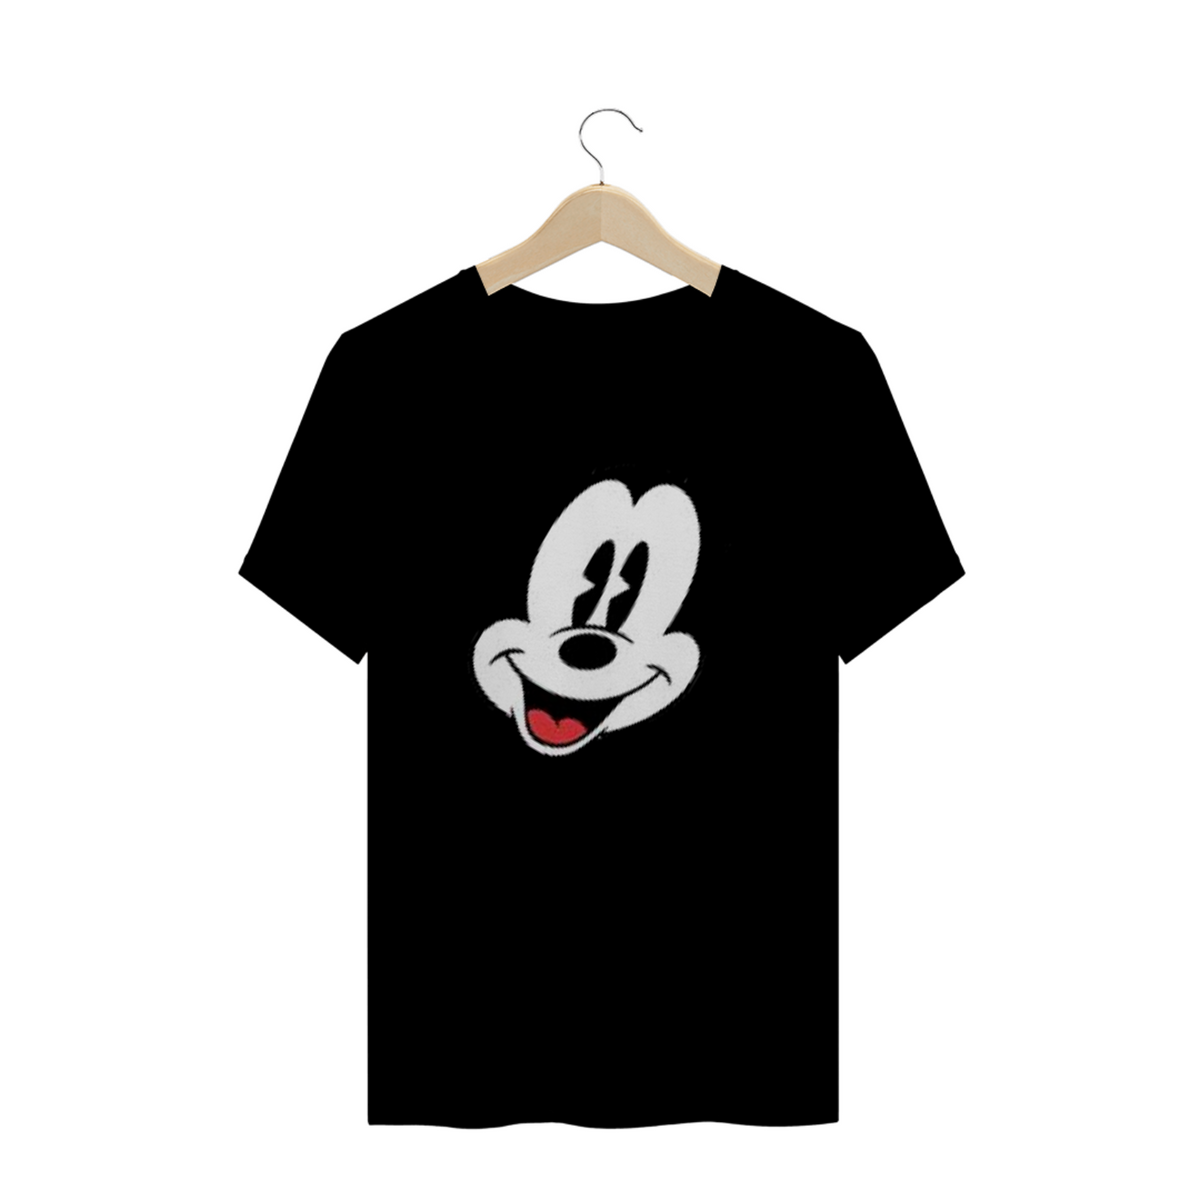 Nome do produto: Coleção A. Silva - Face Mickey 